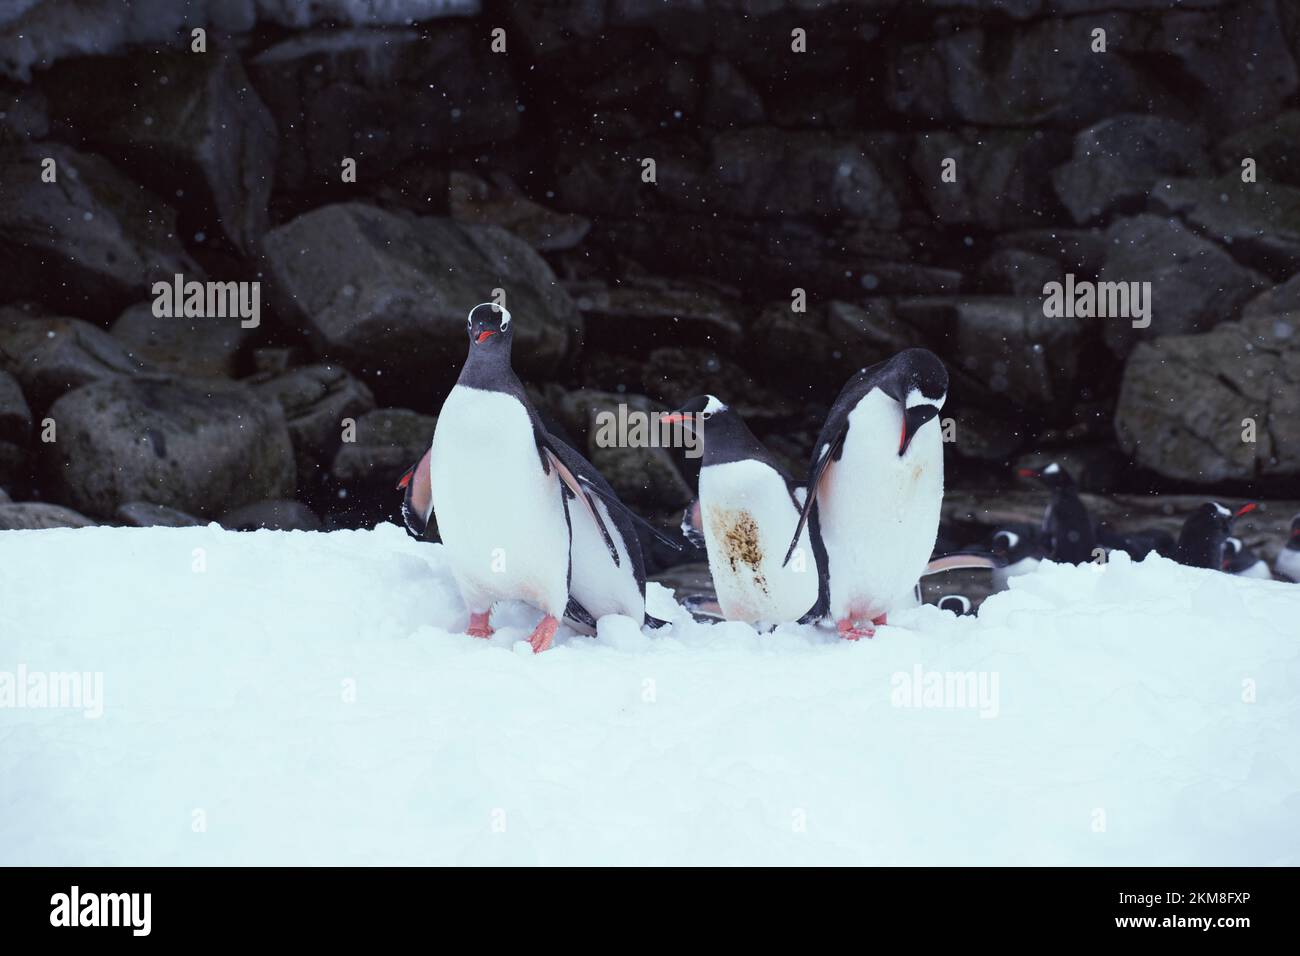 Pinguini Gentoo sull'isola di Petermann innevata in Antartide. Marciando sulla collina innevata con una parete rocciosa sullo sfondo. Foto Stock